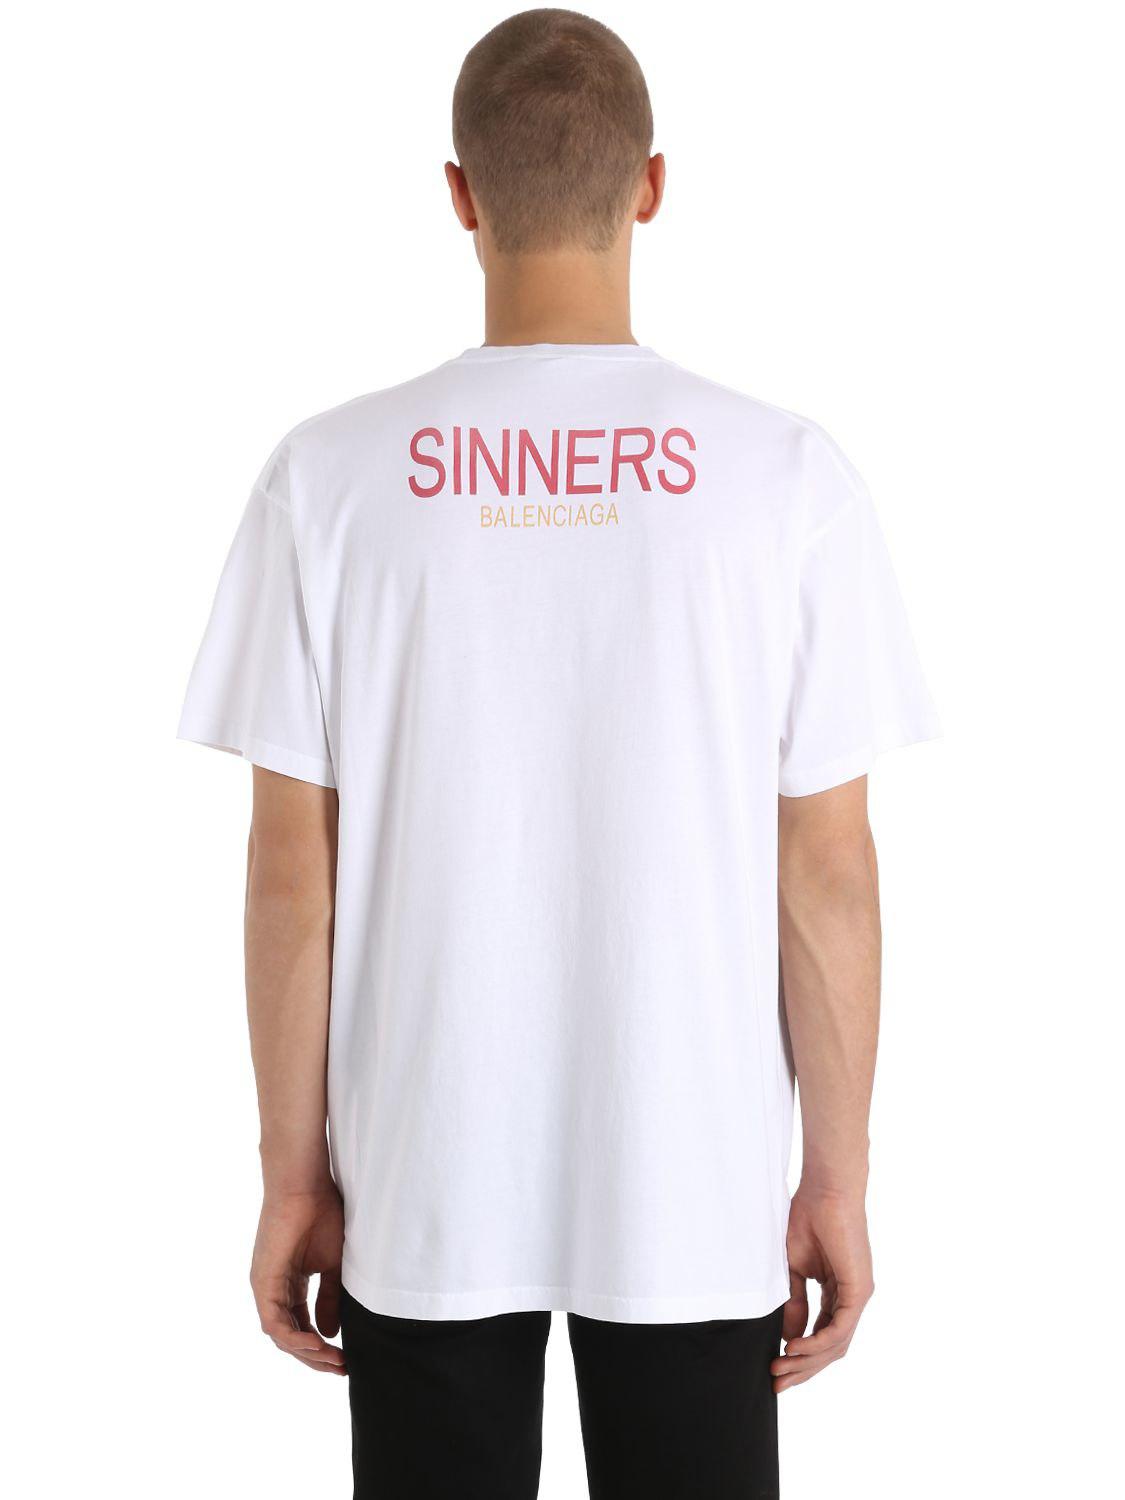 balenciaga sinners t shirt white